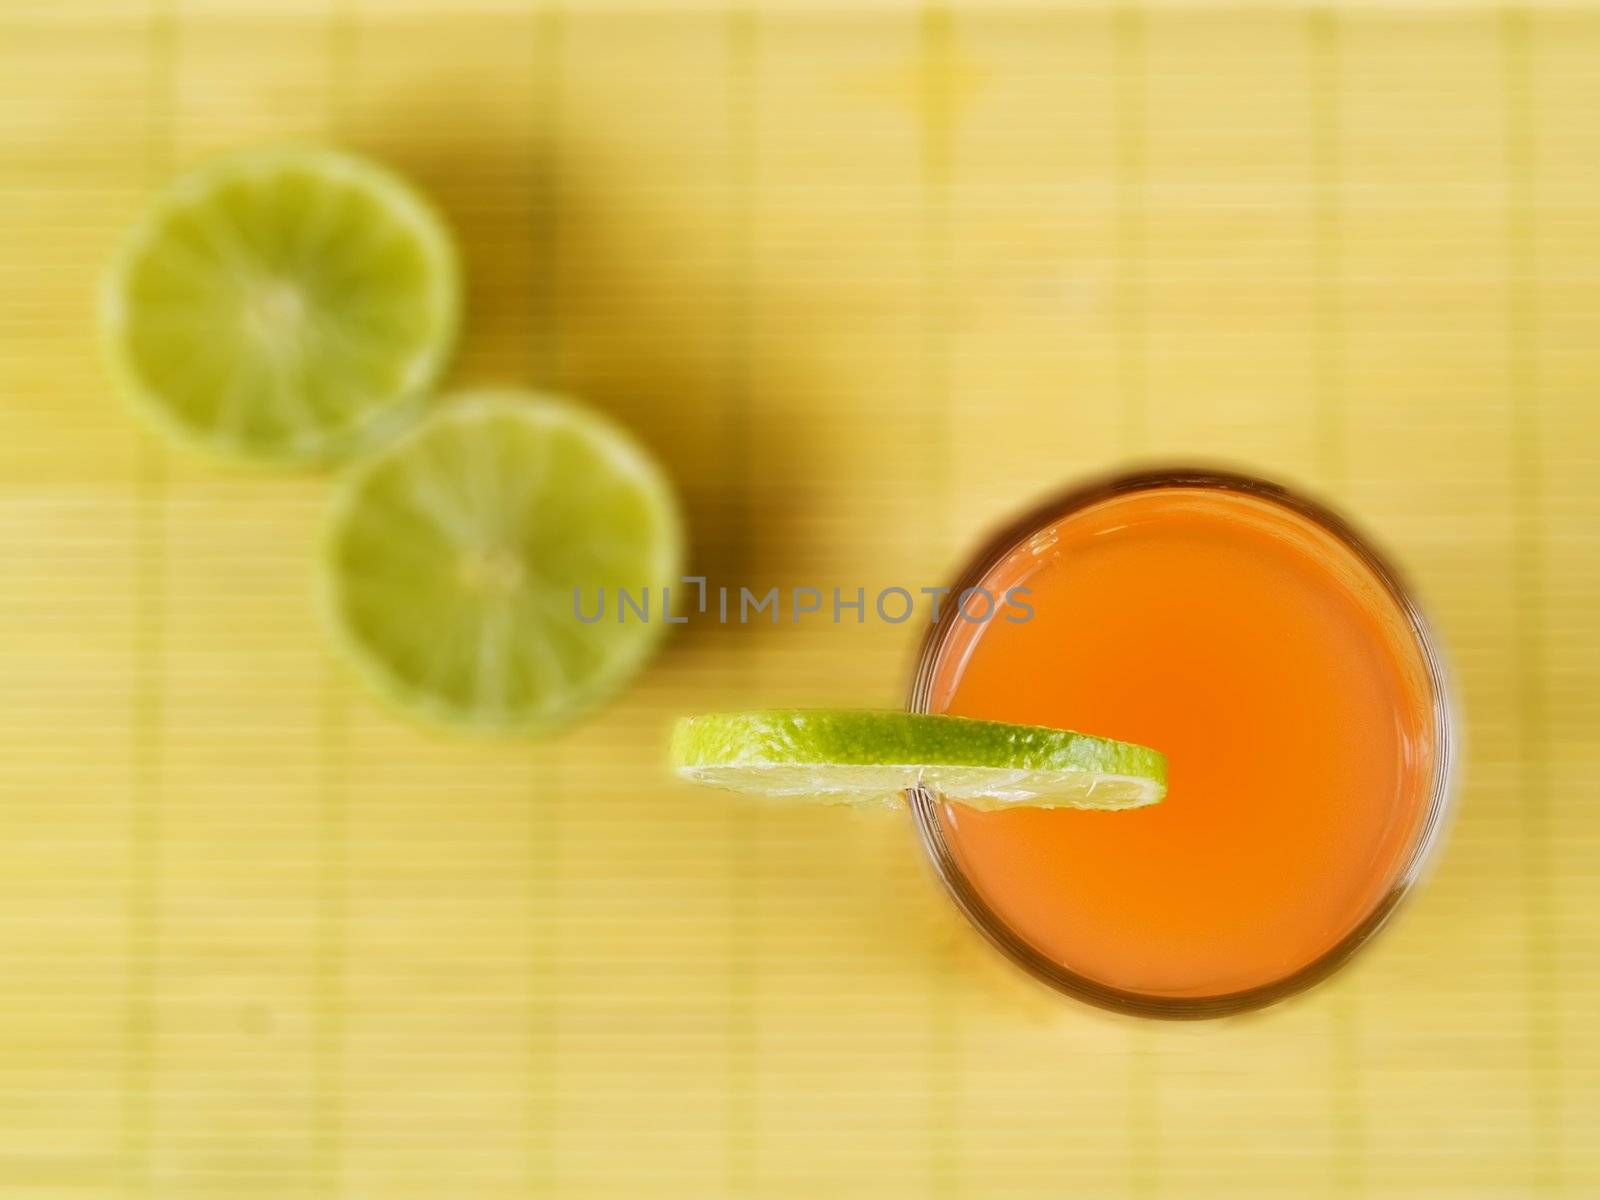 Orange juice by henrischmit